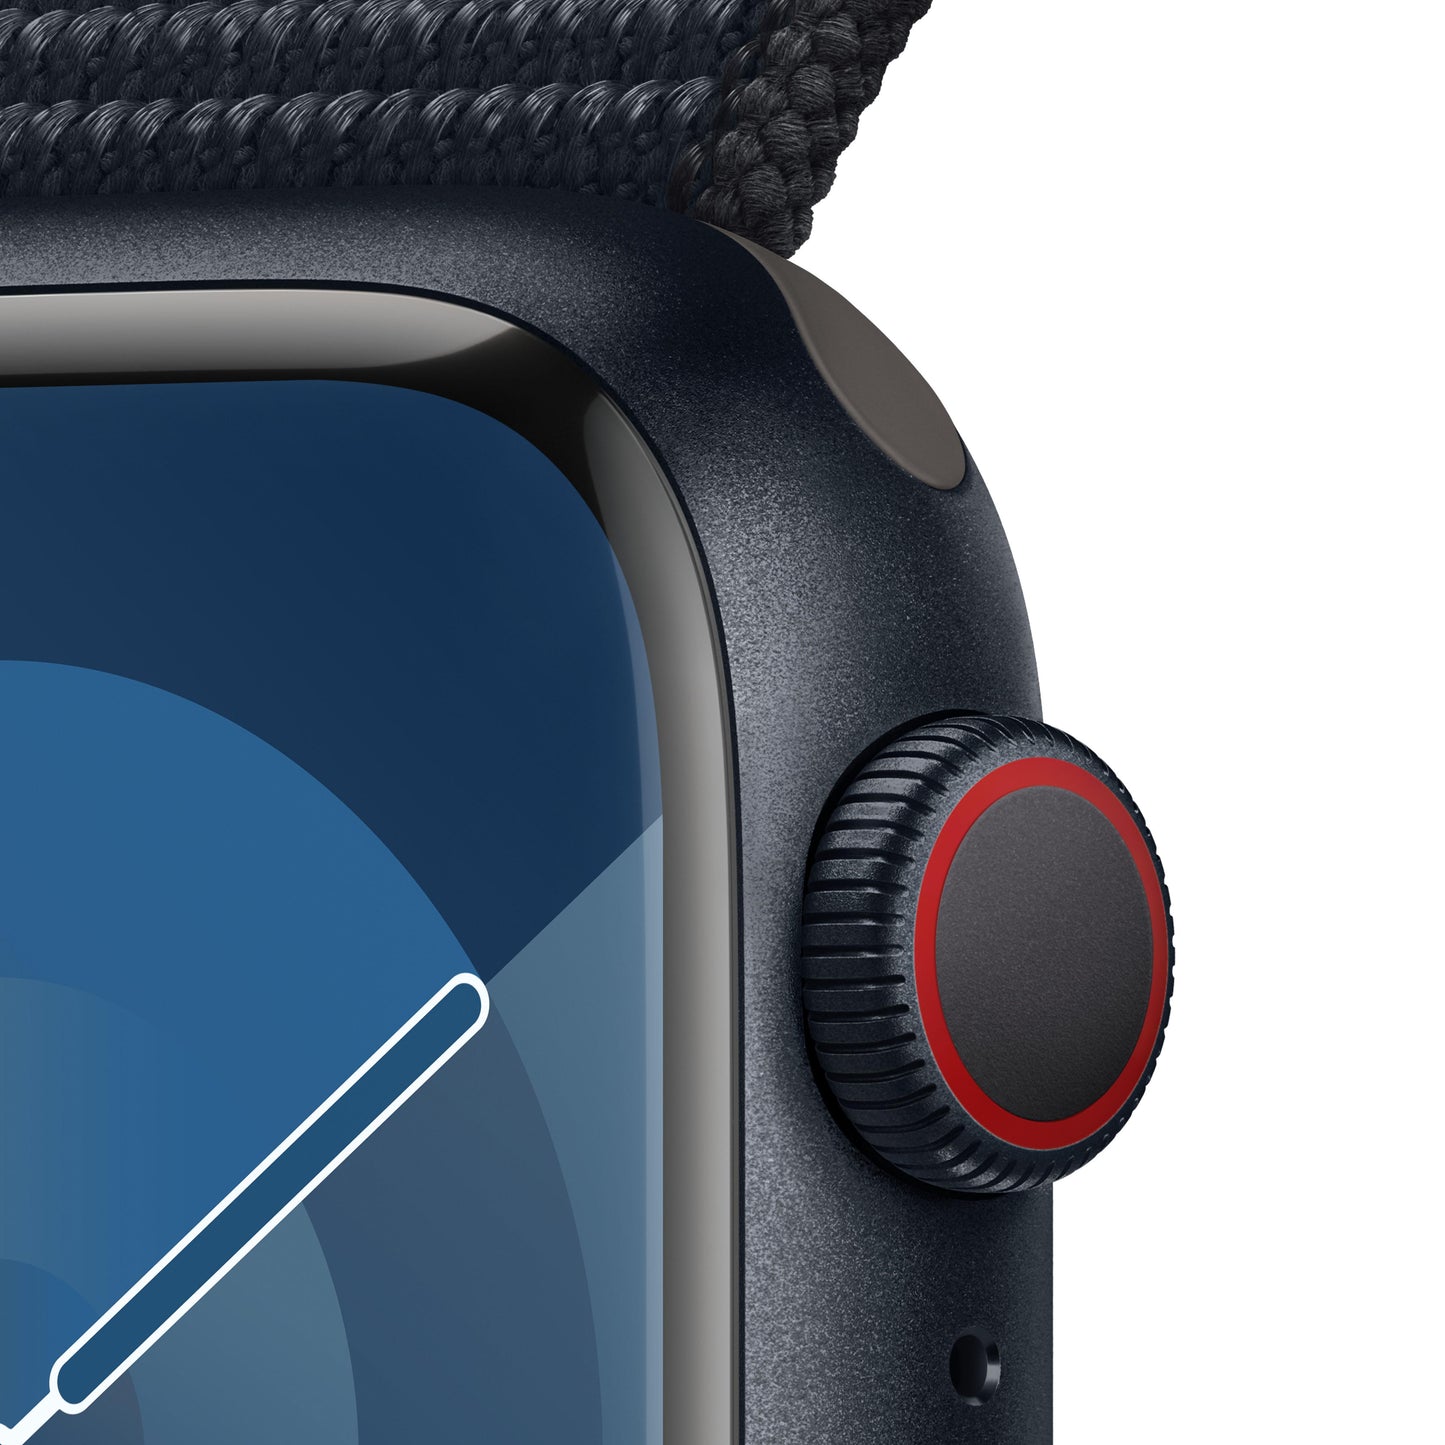 Apple Watch Series 9 (GPS + Cellular) - Caja de aluminio en color medianoche de 41 mm - Correa Loop deportiva color medianoche